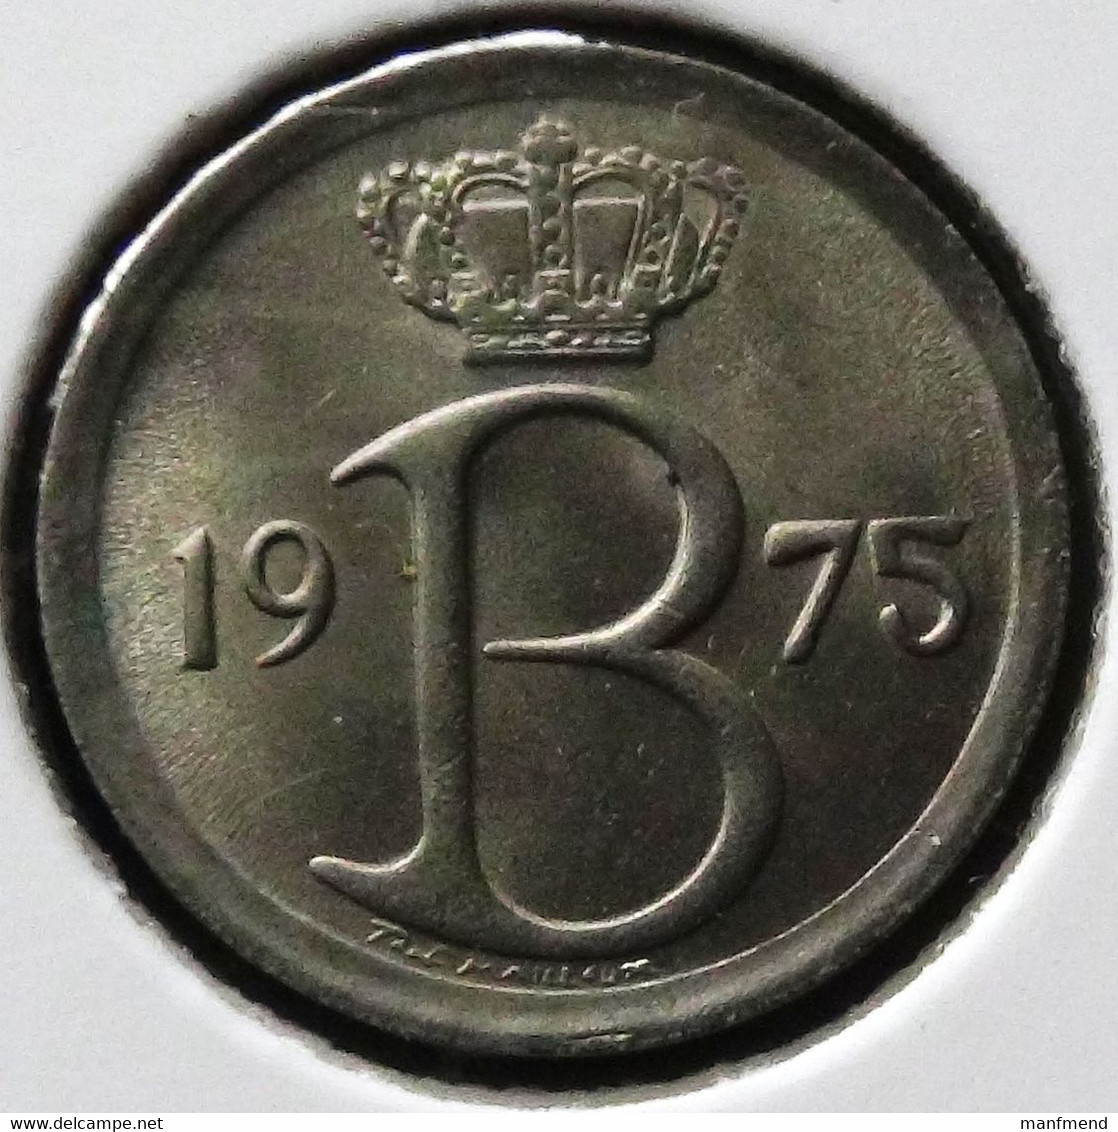 Belgium - 1975 - KM 154.1 - 25 Centimes - Flemishh Legend - XF - Look Scans - 25 Cents